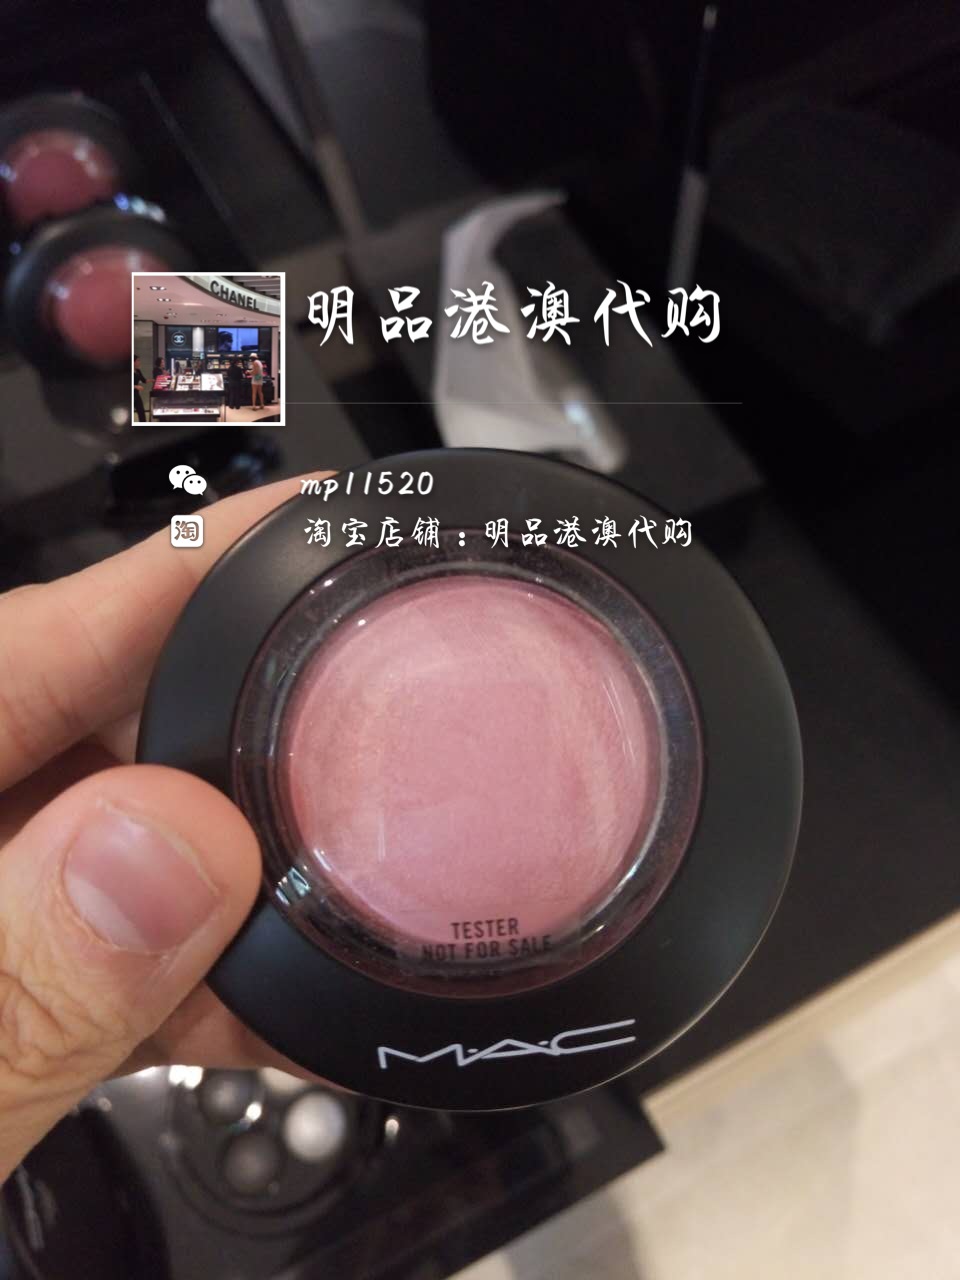 香港专柜代购正品 MAC魅可时尚透明胭脂/腮红6g 自然持久遮瑕修容